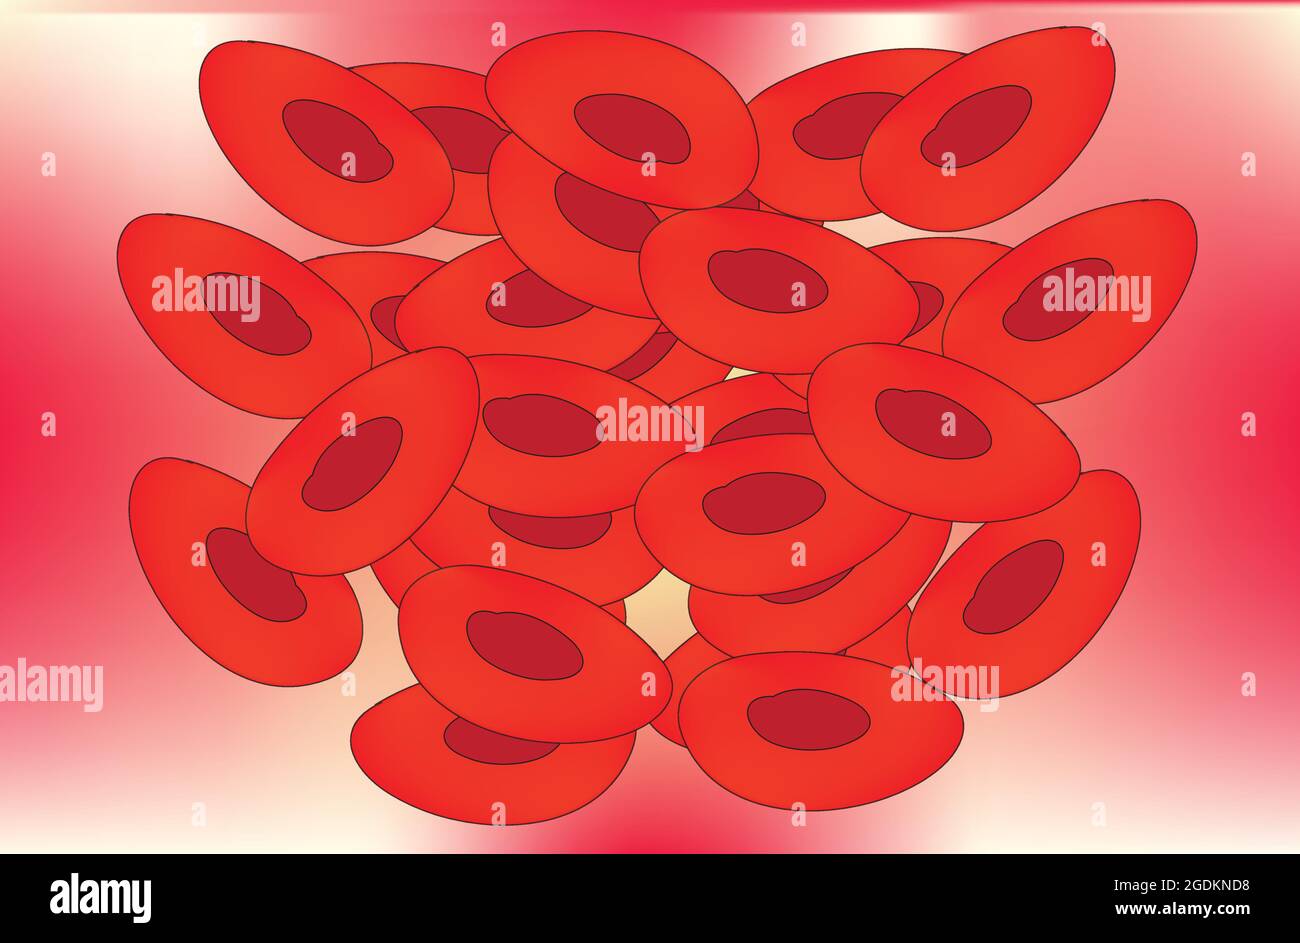 Cluster von roten Blutkörperchen, Blutgerinnsel, Blutklumpen, die sich von einer Flüssigkeit in einen gelartigen oder halbfesten Zustand geändert haben, verhindern den Verlust von zu viel Blut Stock Vektor